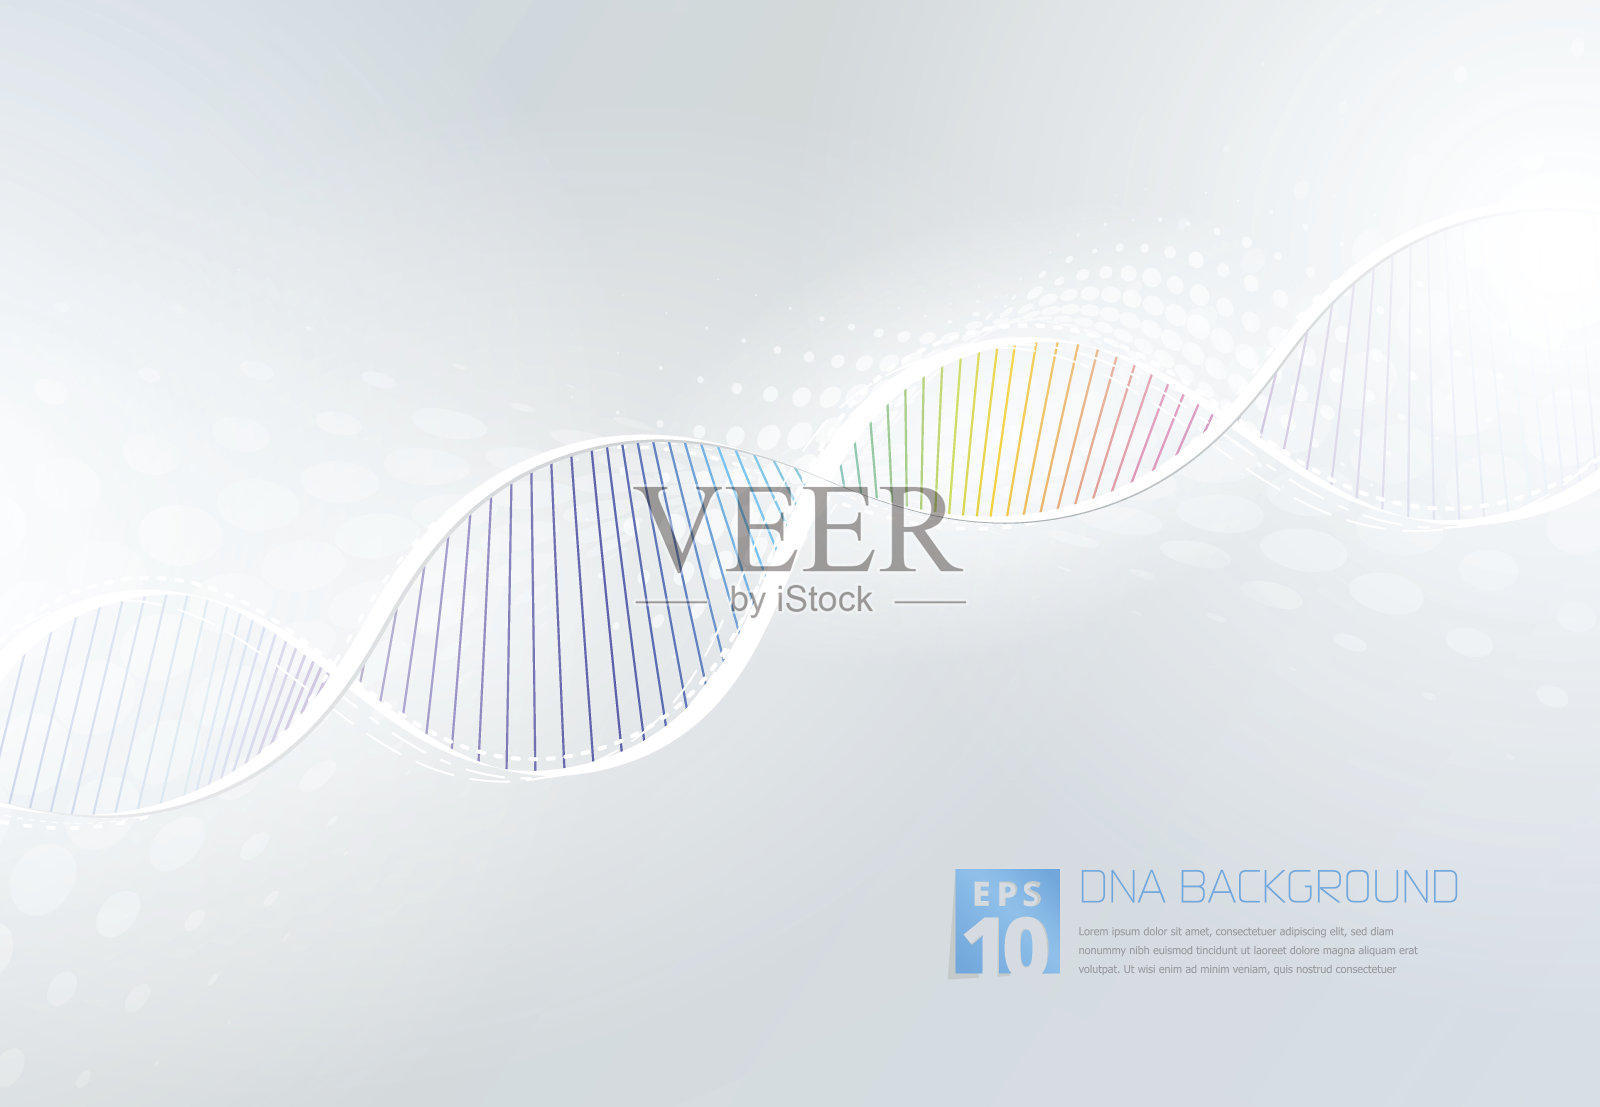 DNA Abstarct背景插画图片素材